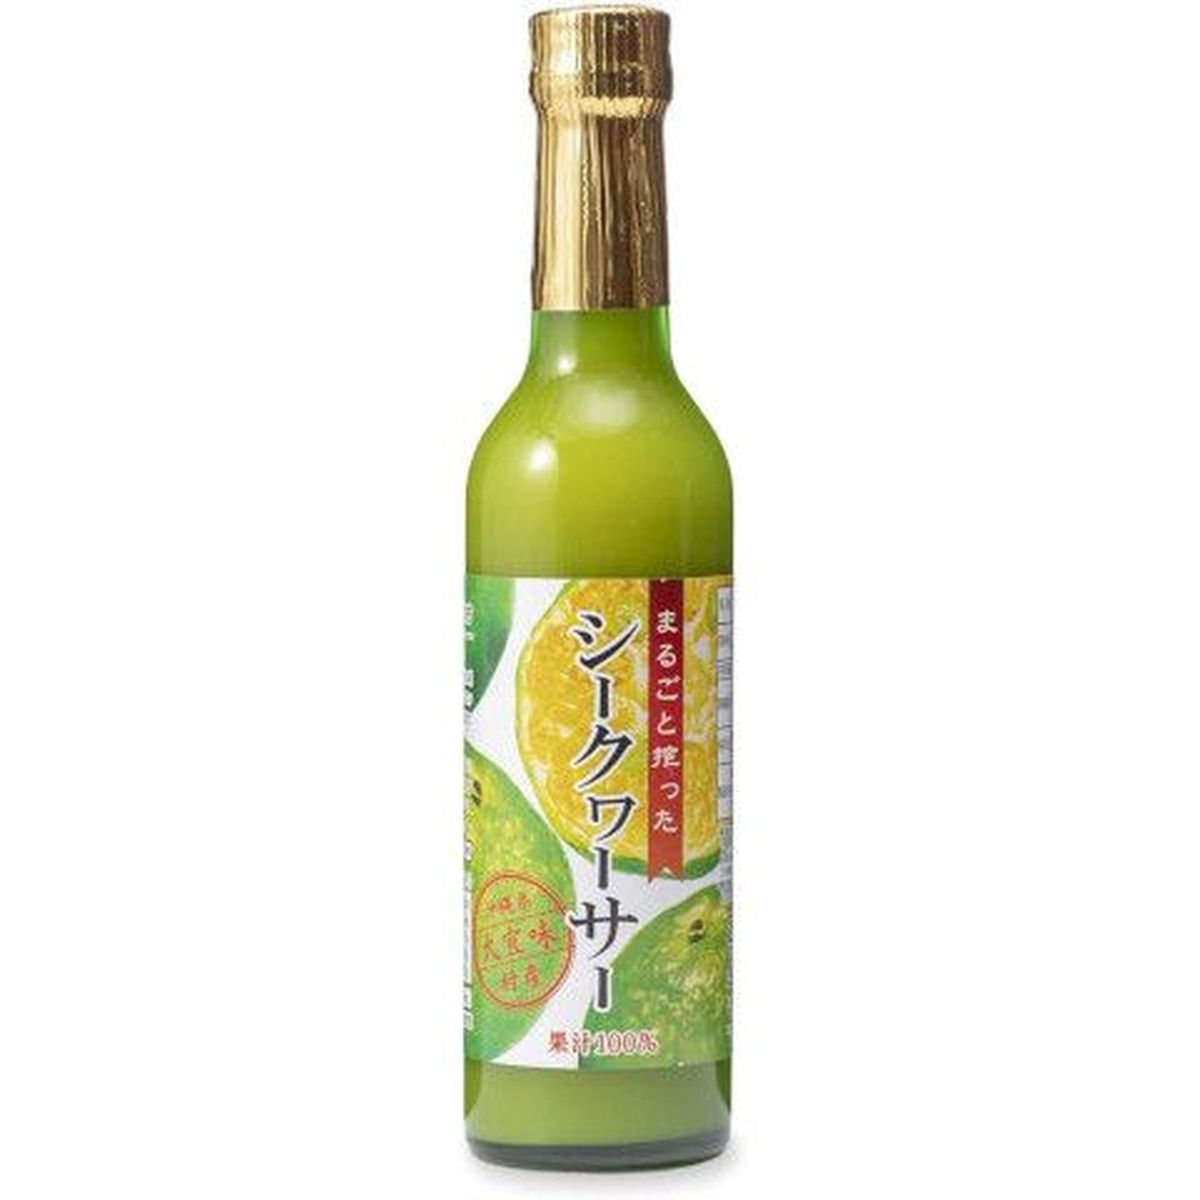 【12個入リ】沖縄海星 マルゴト搾ッタシークワーサー 瓶 300ml